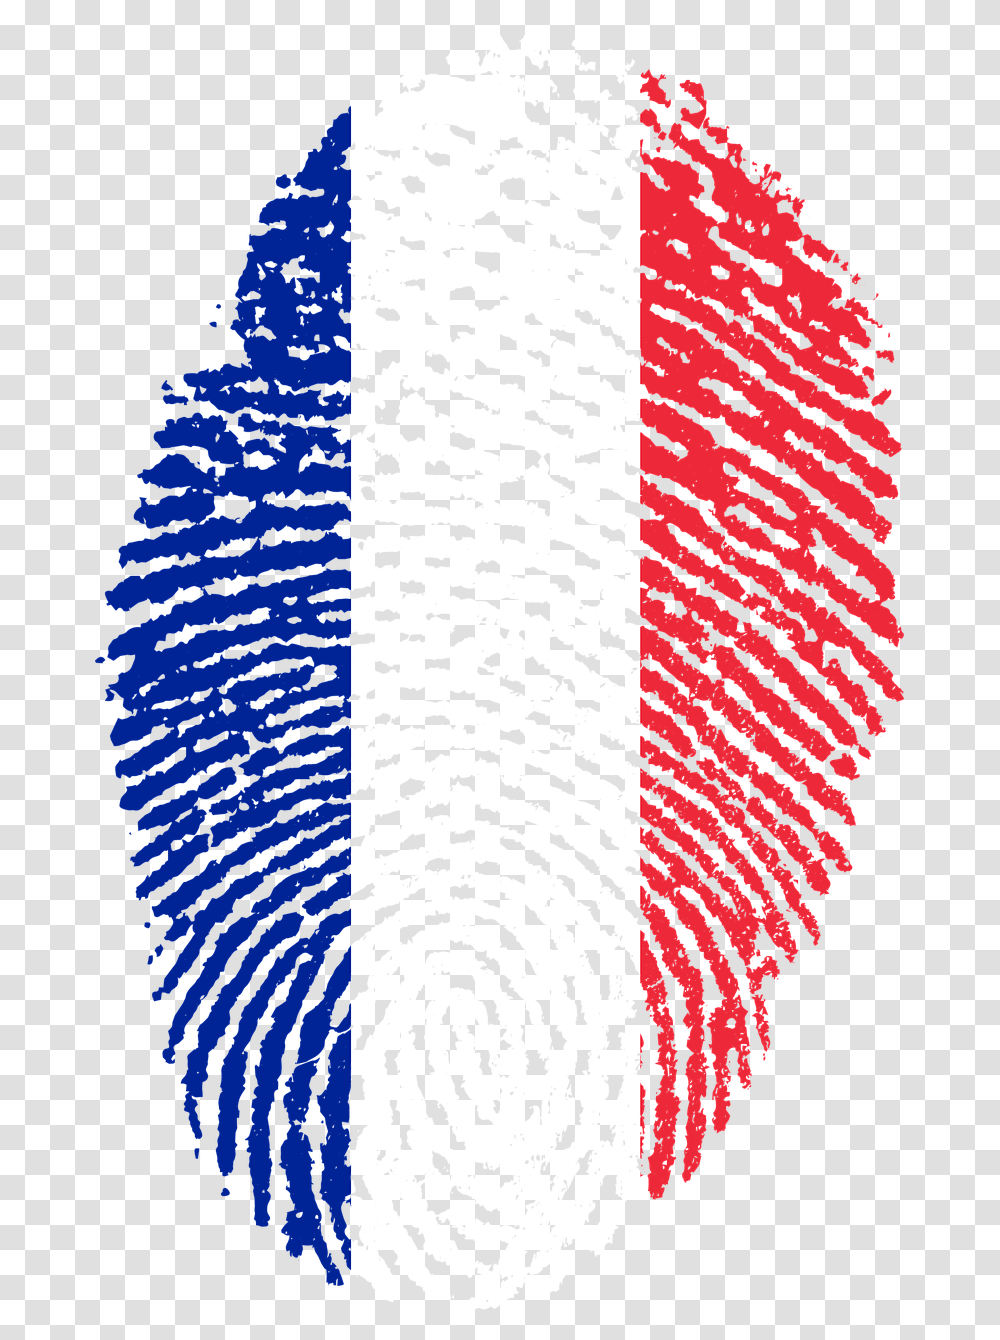 France France Flag Fingerprint Country Pride Iden France France Flag Fingerprint, Rug, Panther, Animal Transparent Png